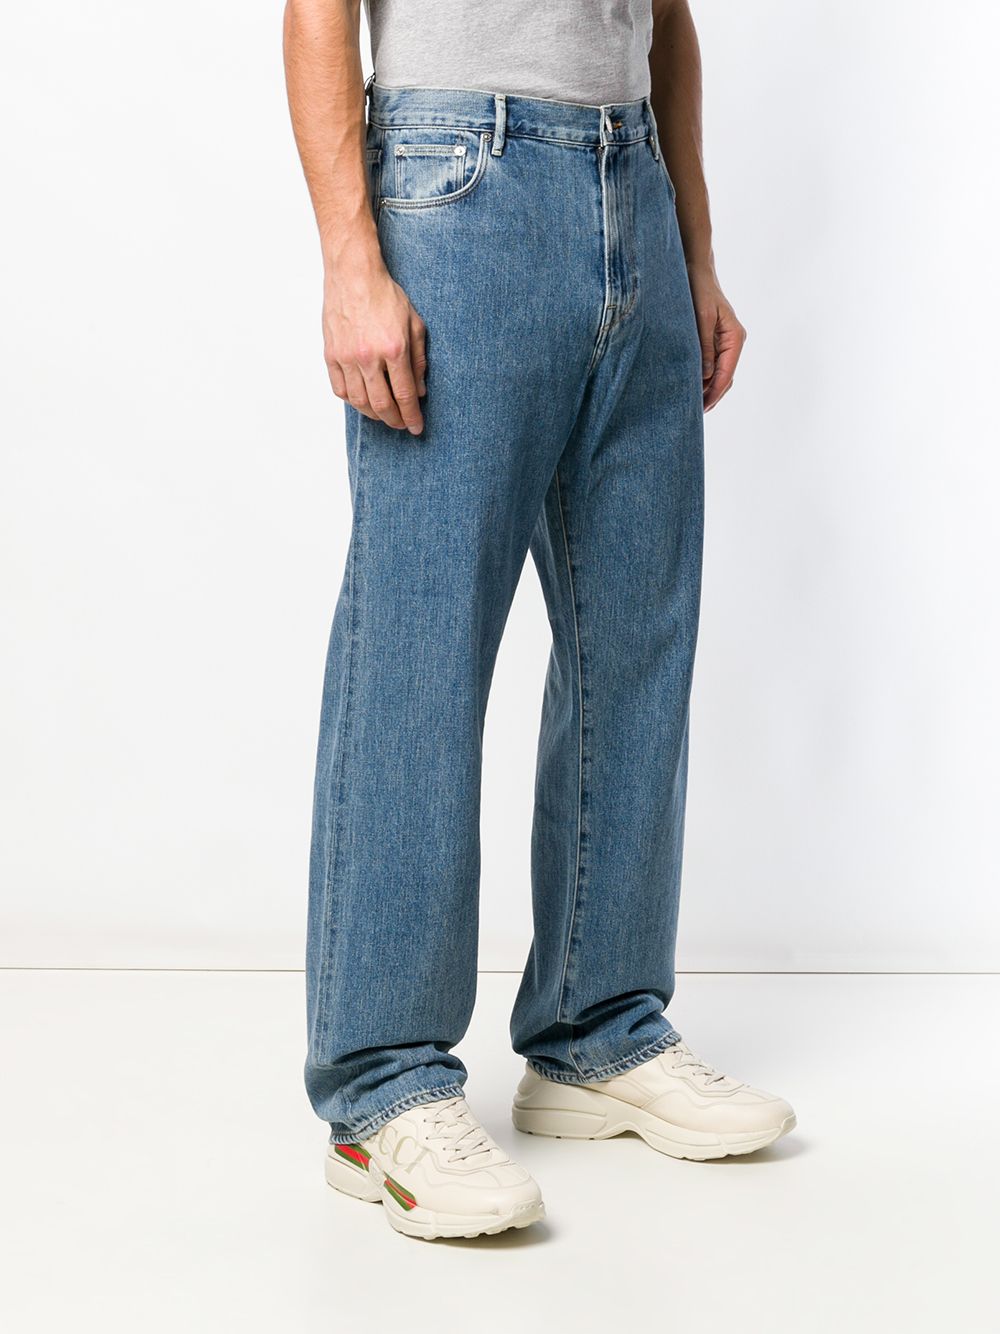 фото Burberry широкие джинсы